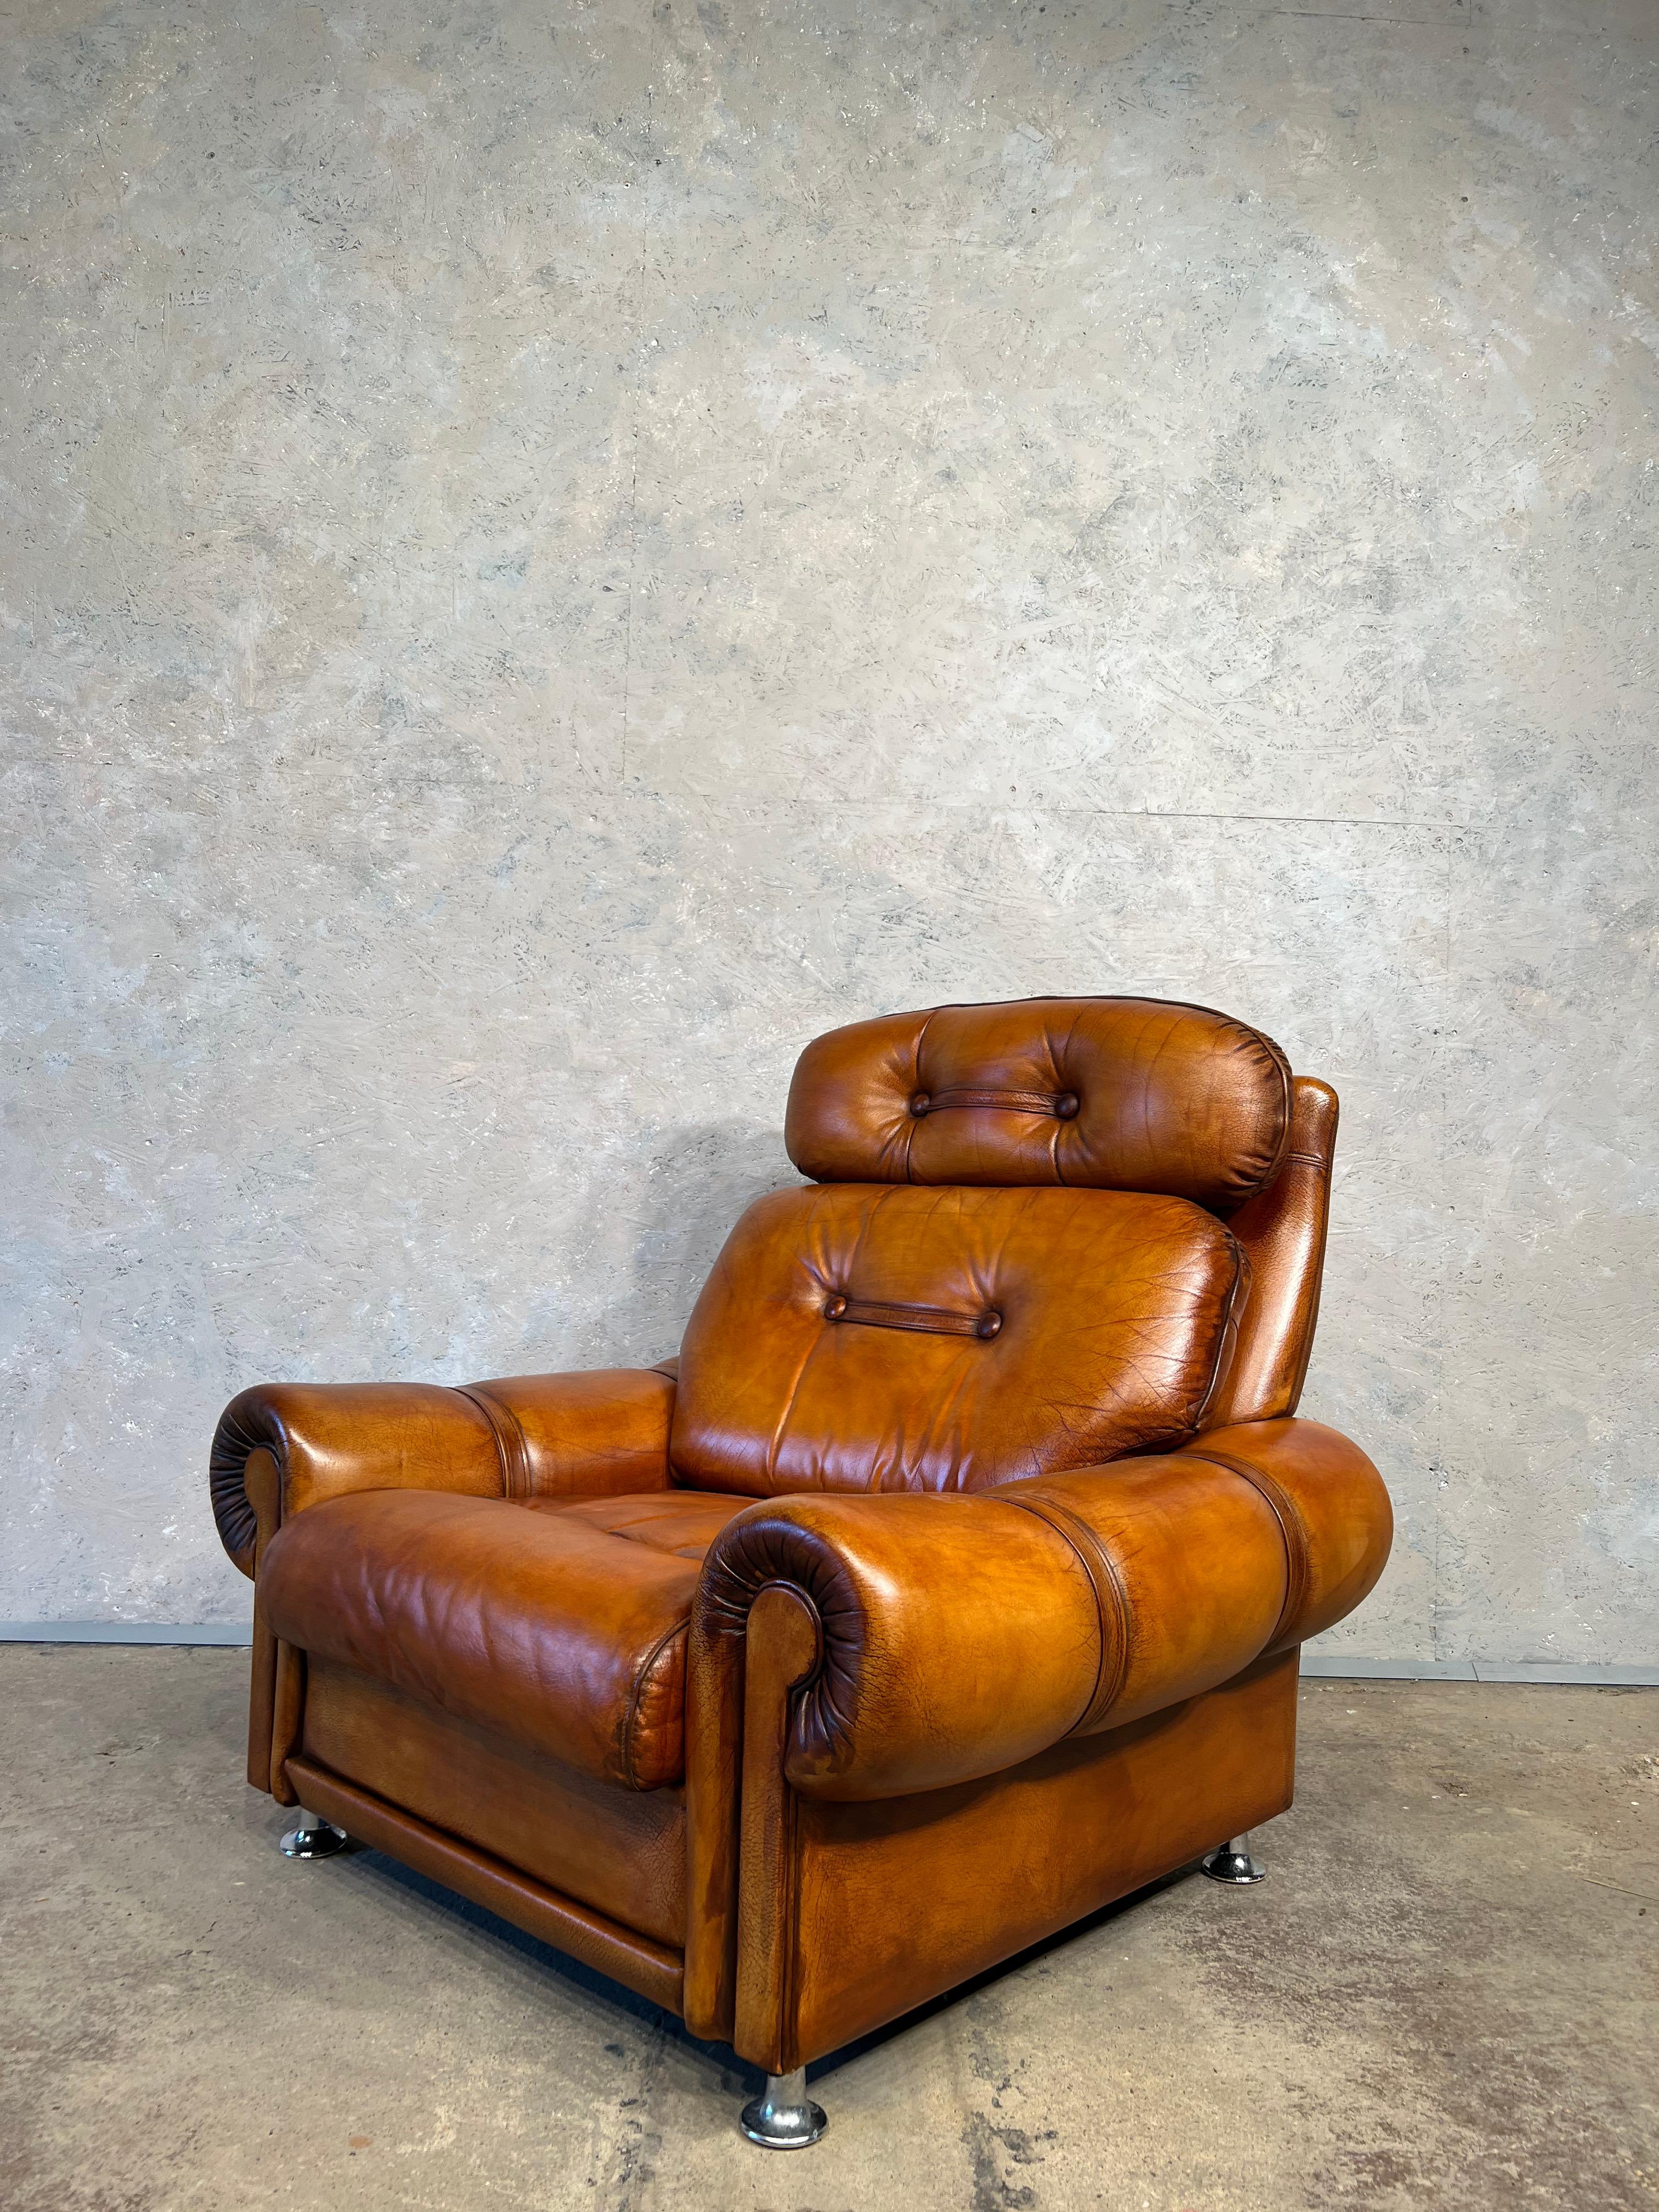 Superbe fauteuil pivotant danois en cuir vintage 1970


Très confortable pour s'asseoir, joli design, belle couleur patinée claire Tan teintée à la main et finition. Repose sur des pieds chromés.

En très bon état.

Les visites sont les bienvenues